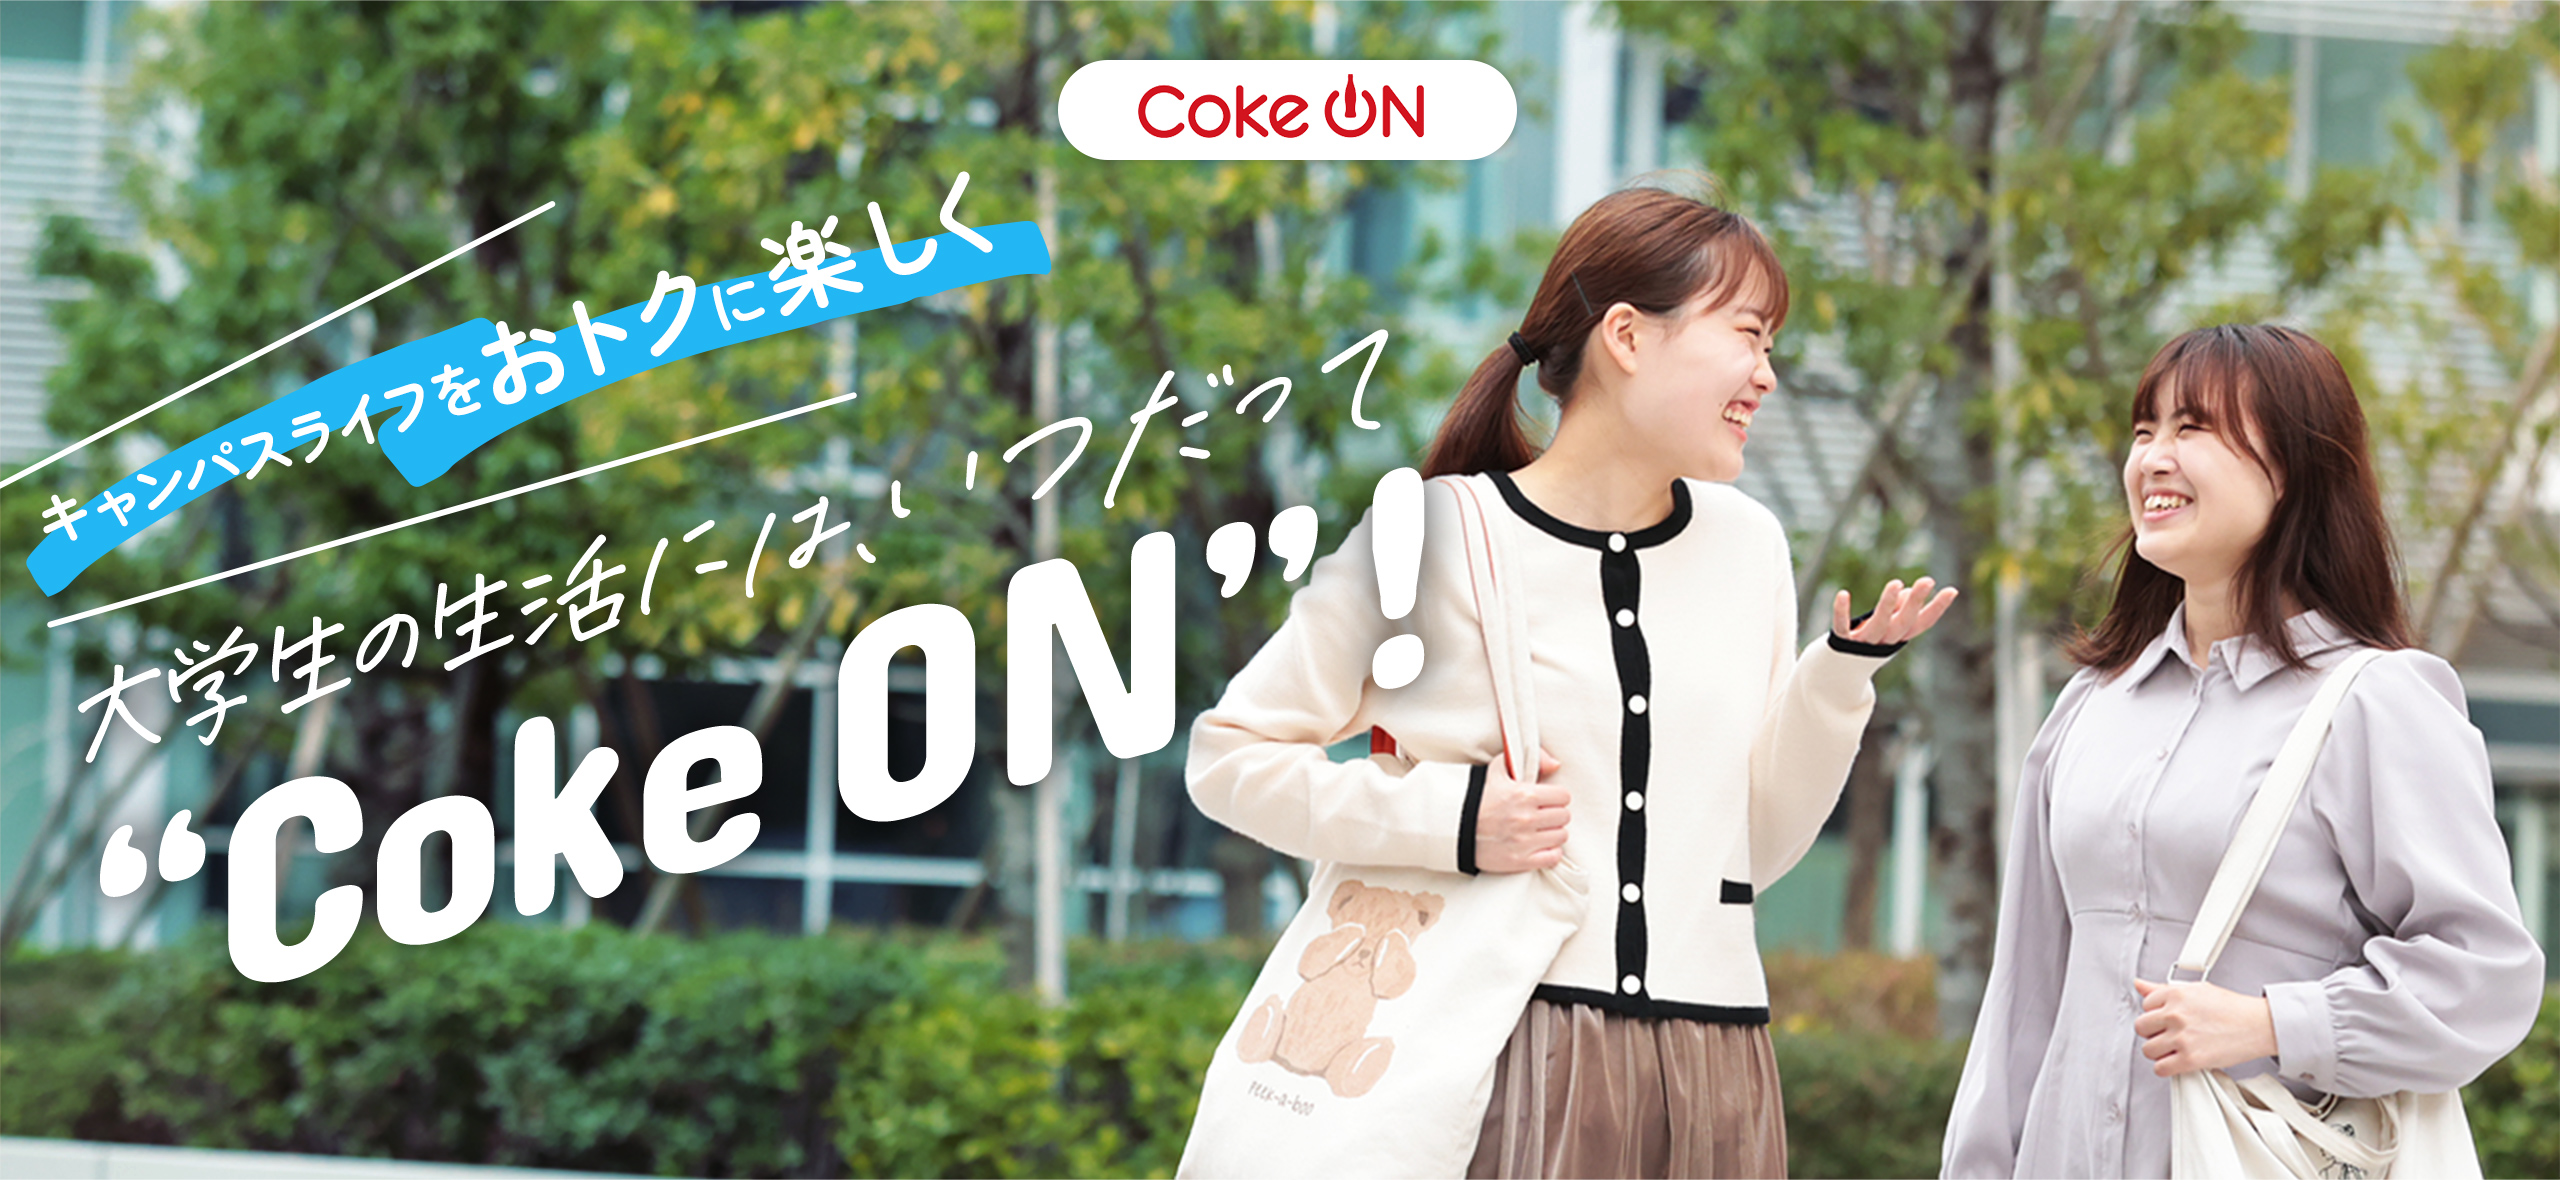 キャンパスライフをおトクに楽しく 大学生の生活には、いつだって“Coke ON”！